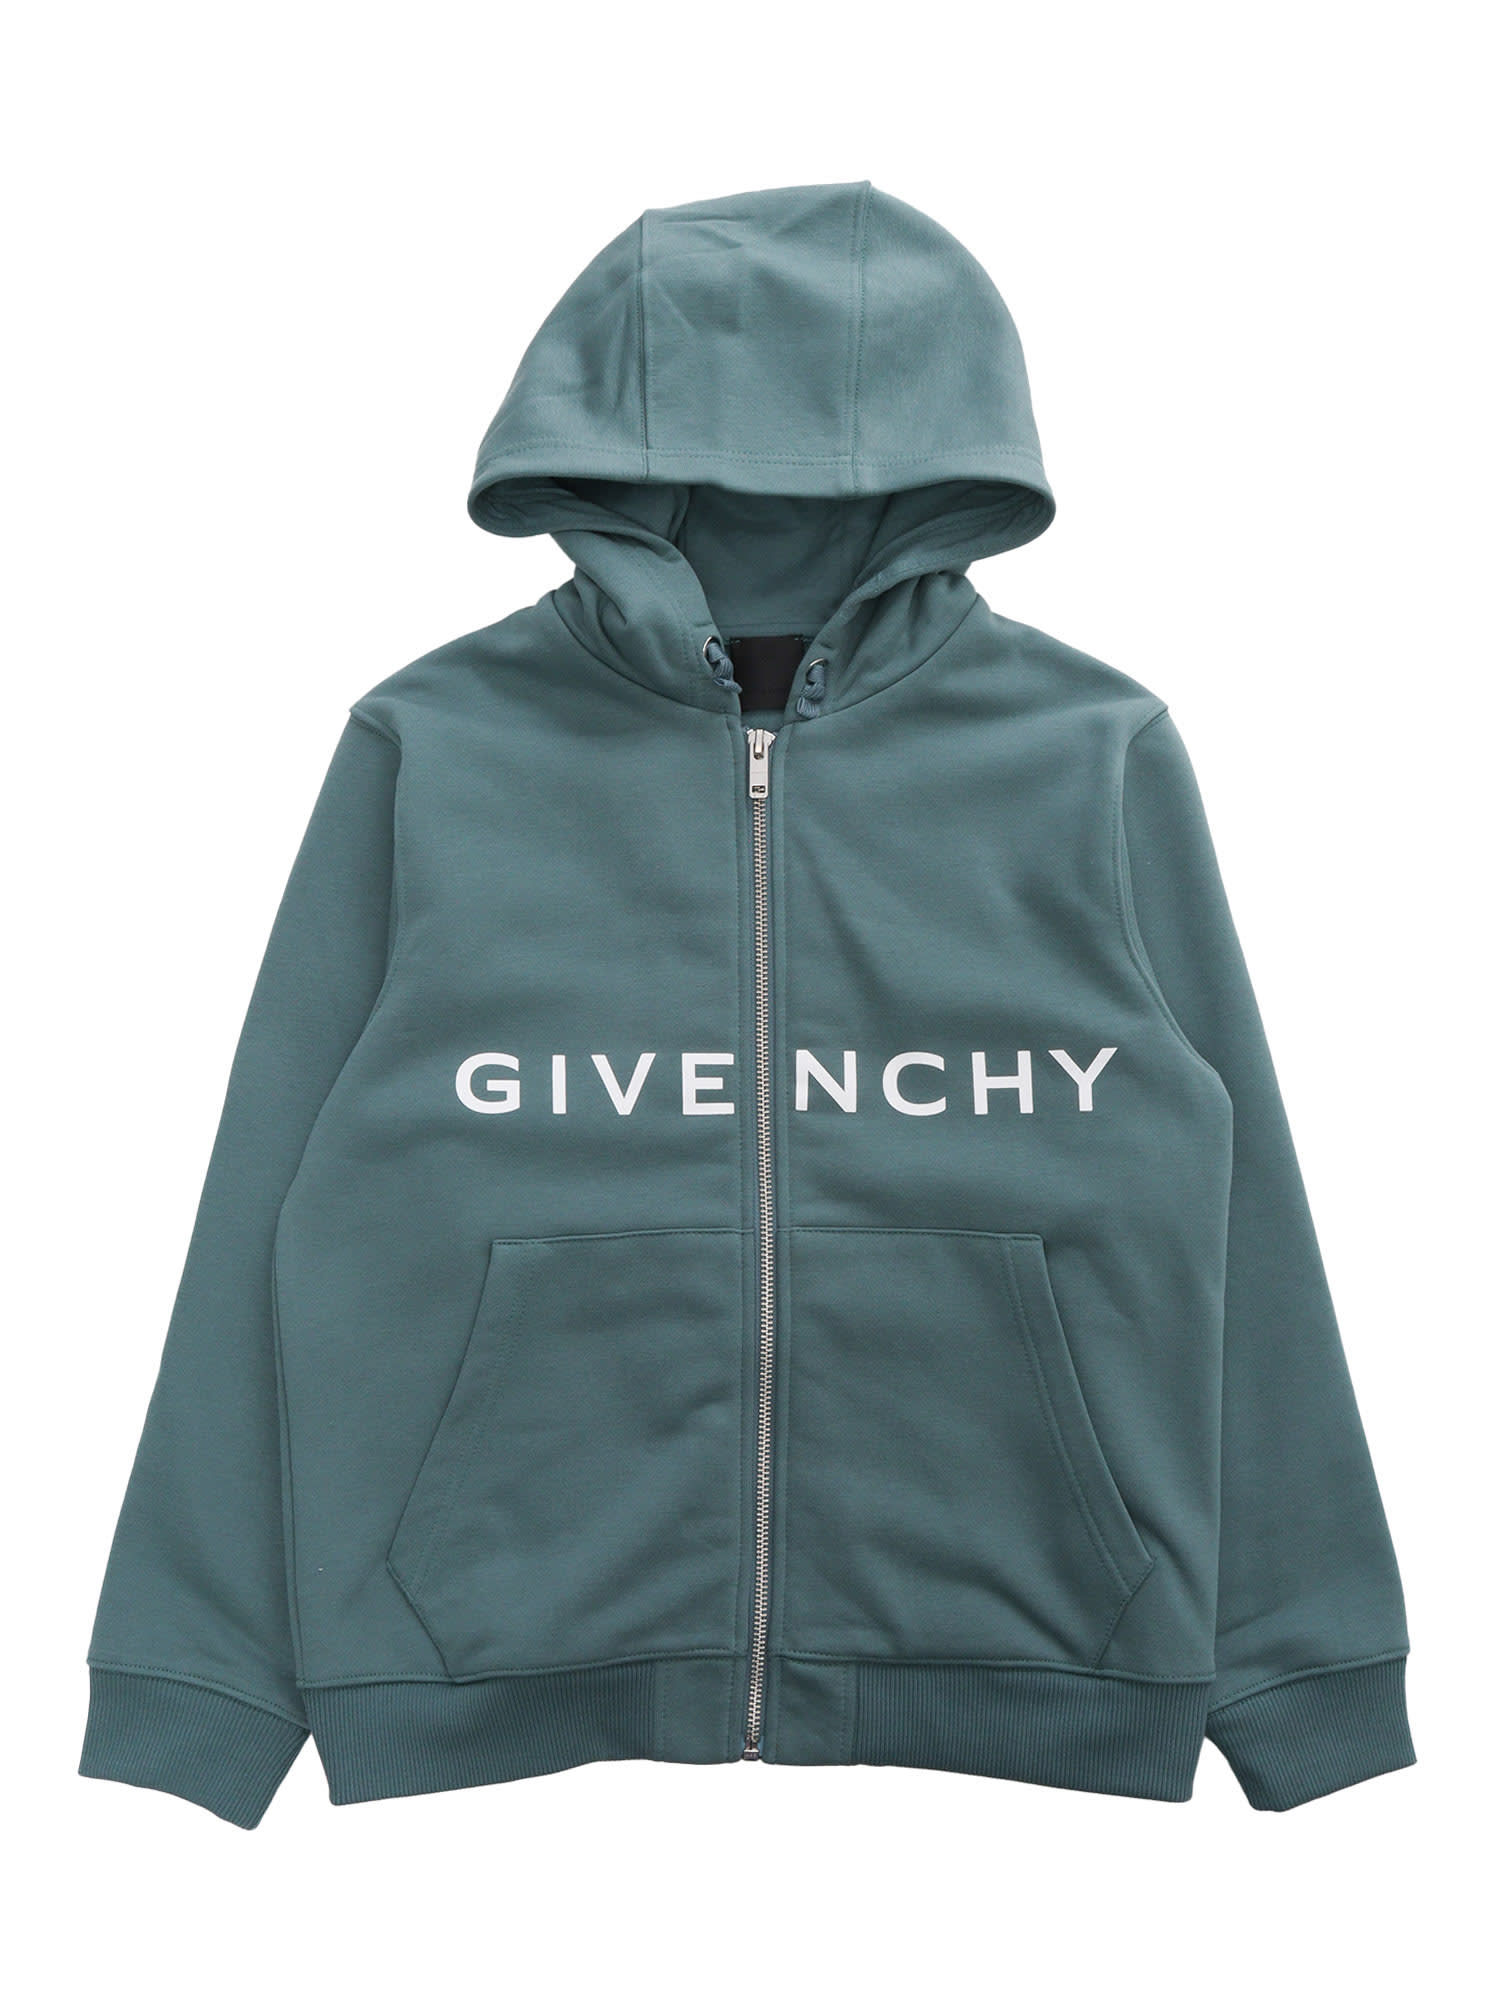 Givenchy Kids' Zipped Sweatshirt In Green